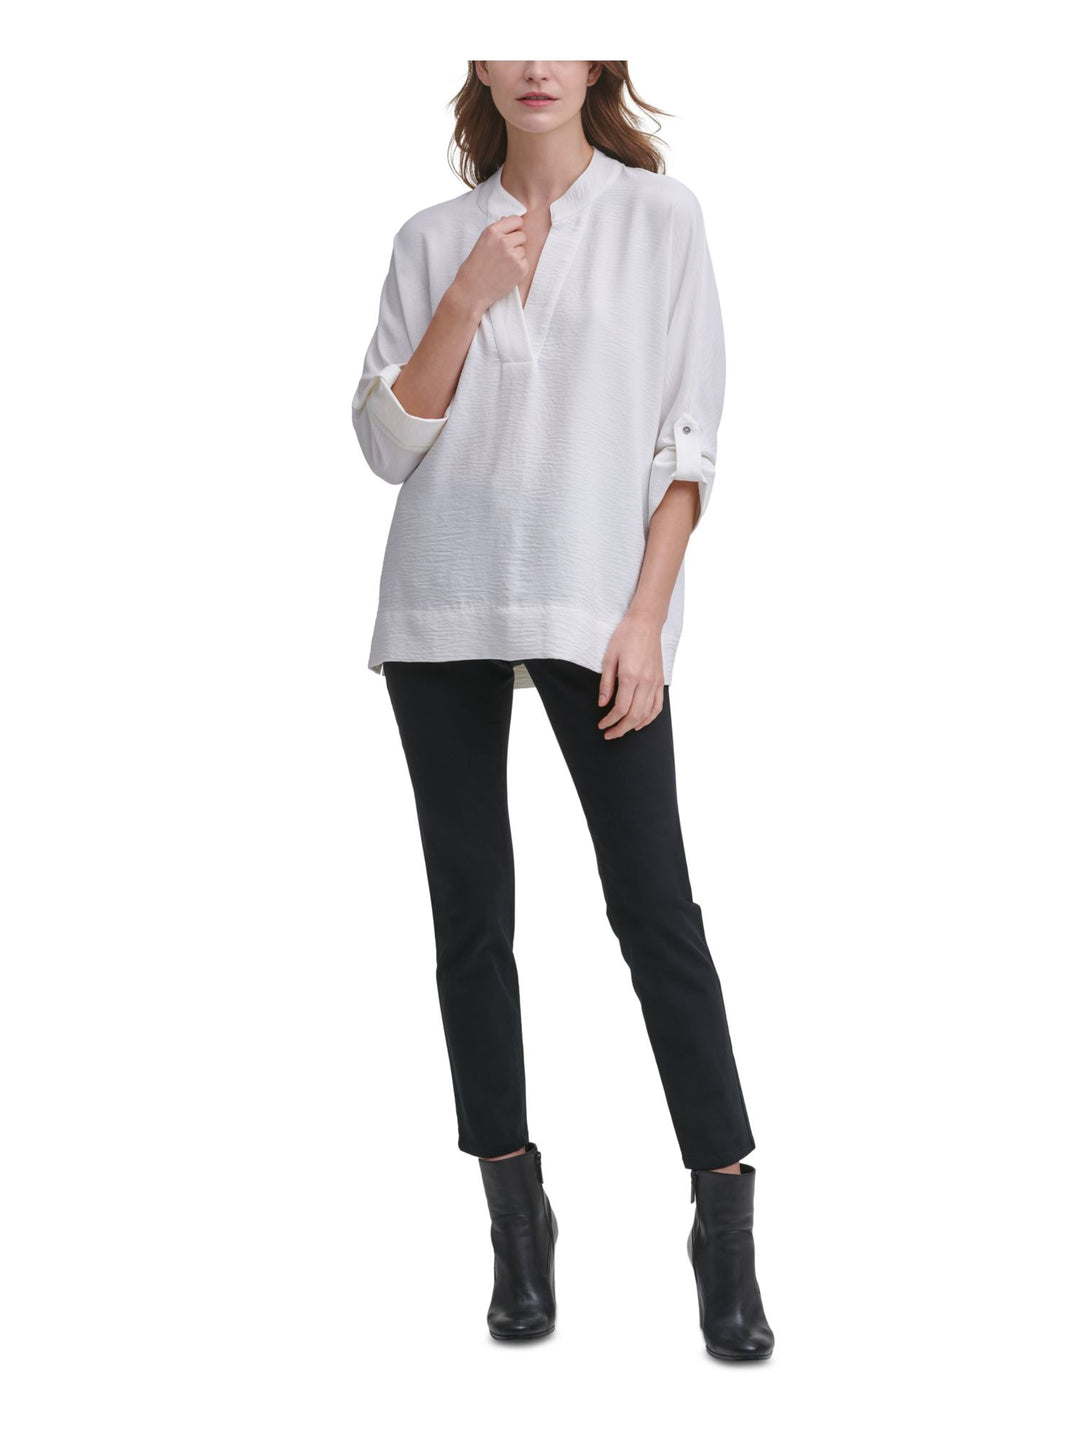 Calvin Klein Women's Puckered V Neck Shirt White Size Medium